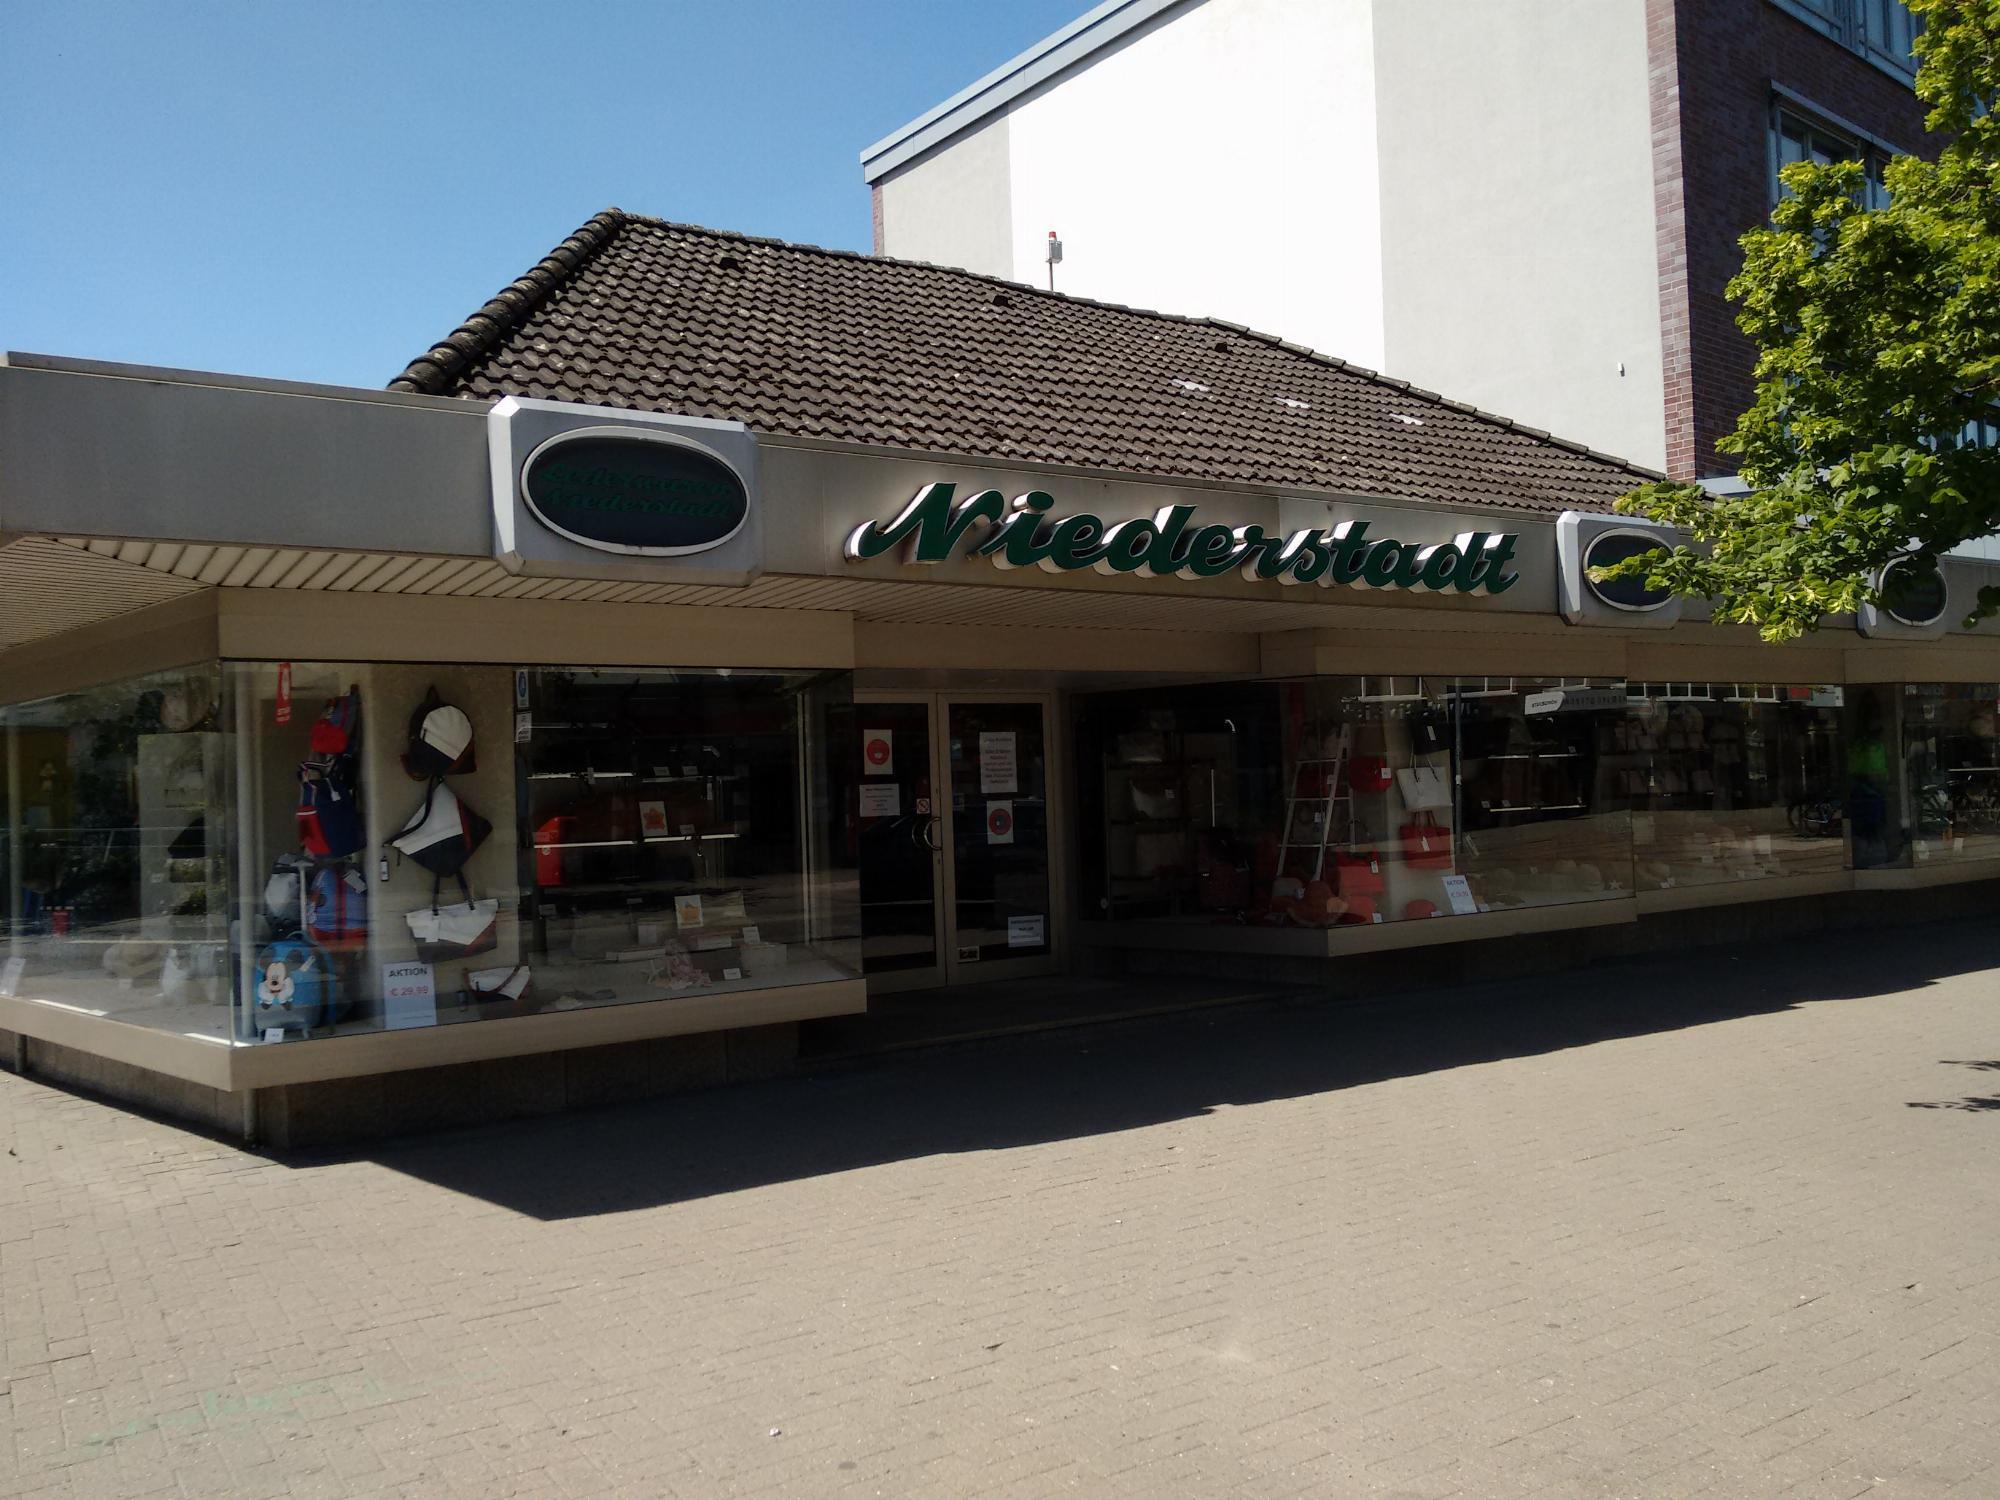 Lederwaren Niederstadt in Hamburg-Rahlstedt